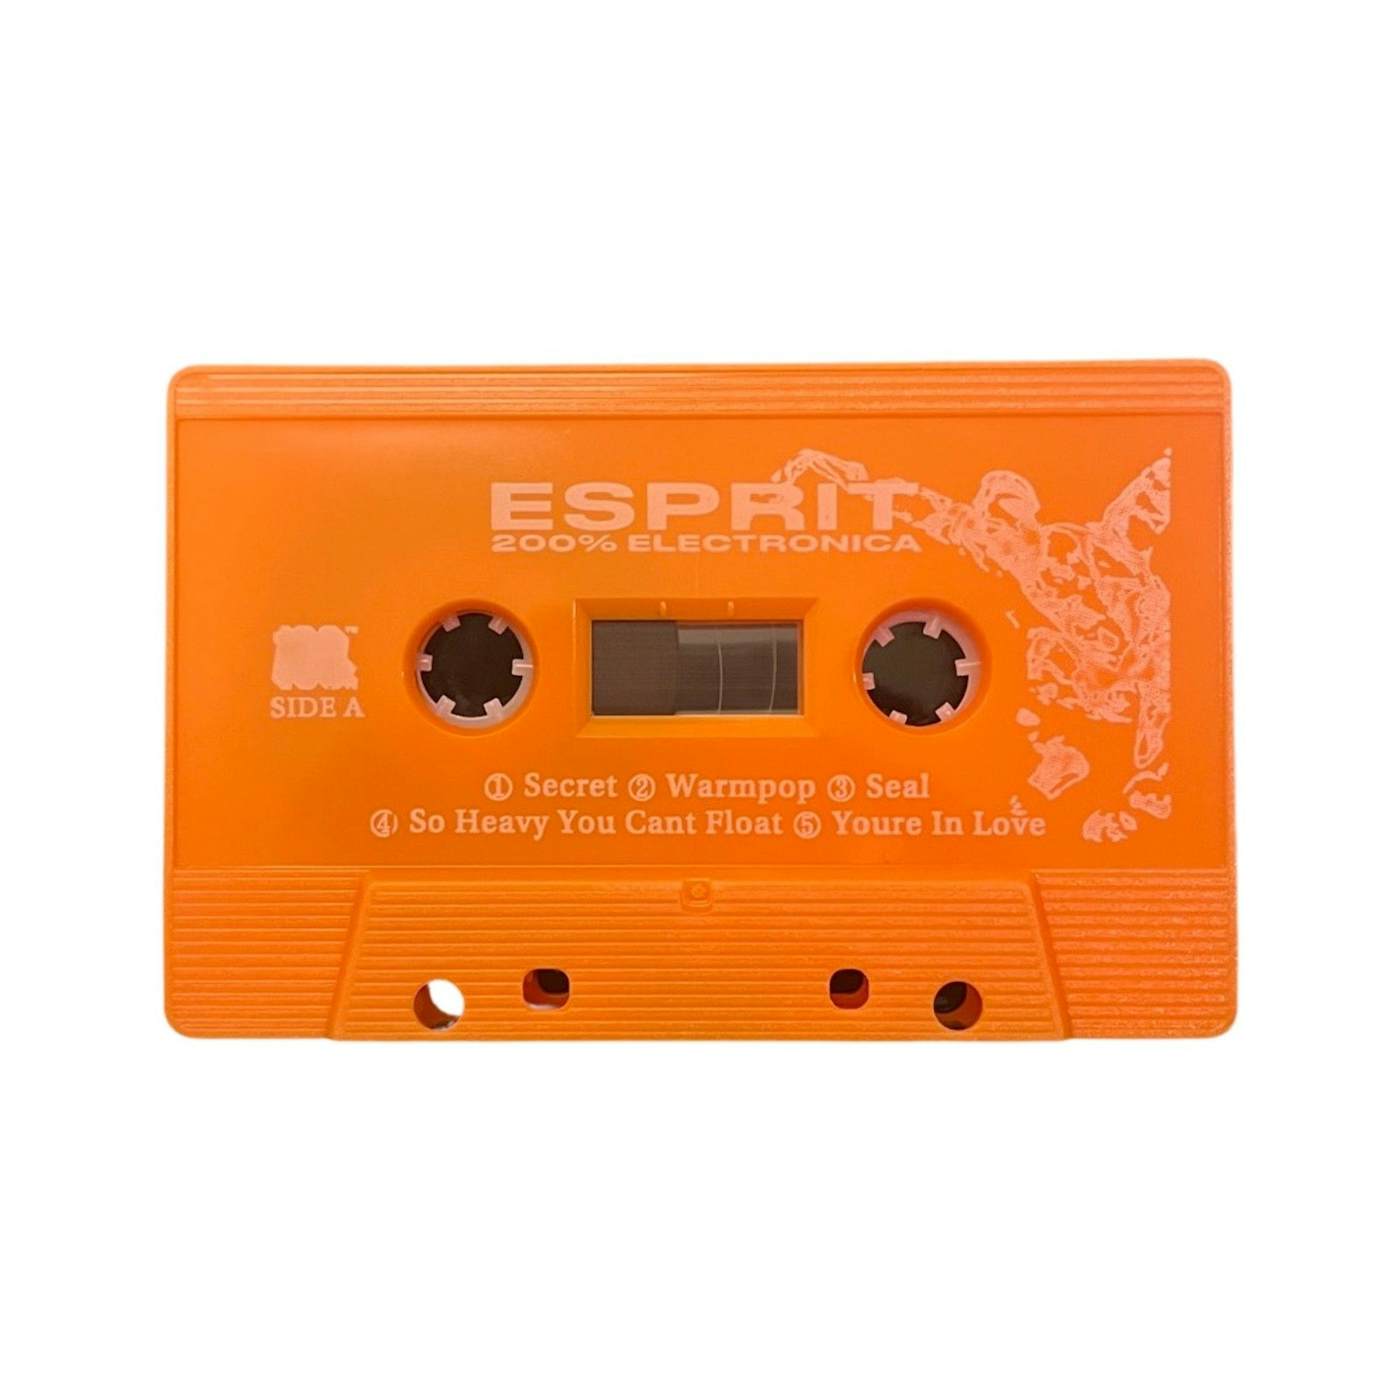 ESPRIT 空想 200% Electronica Cassette